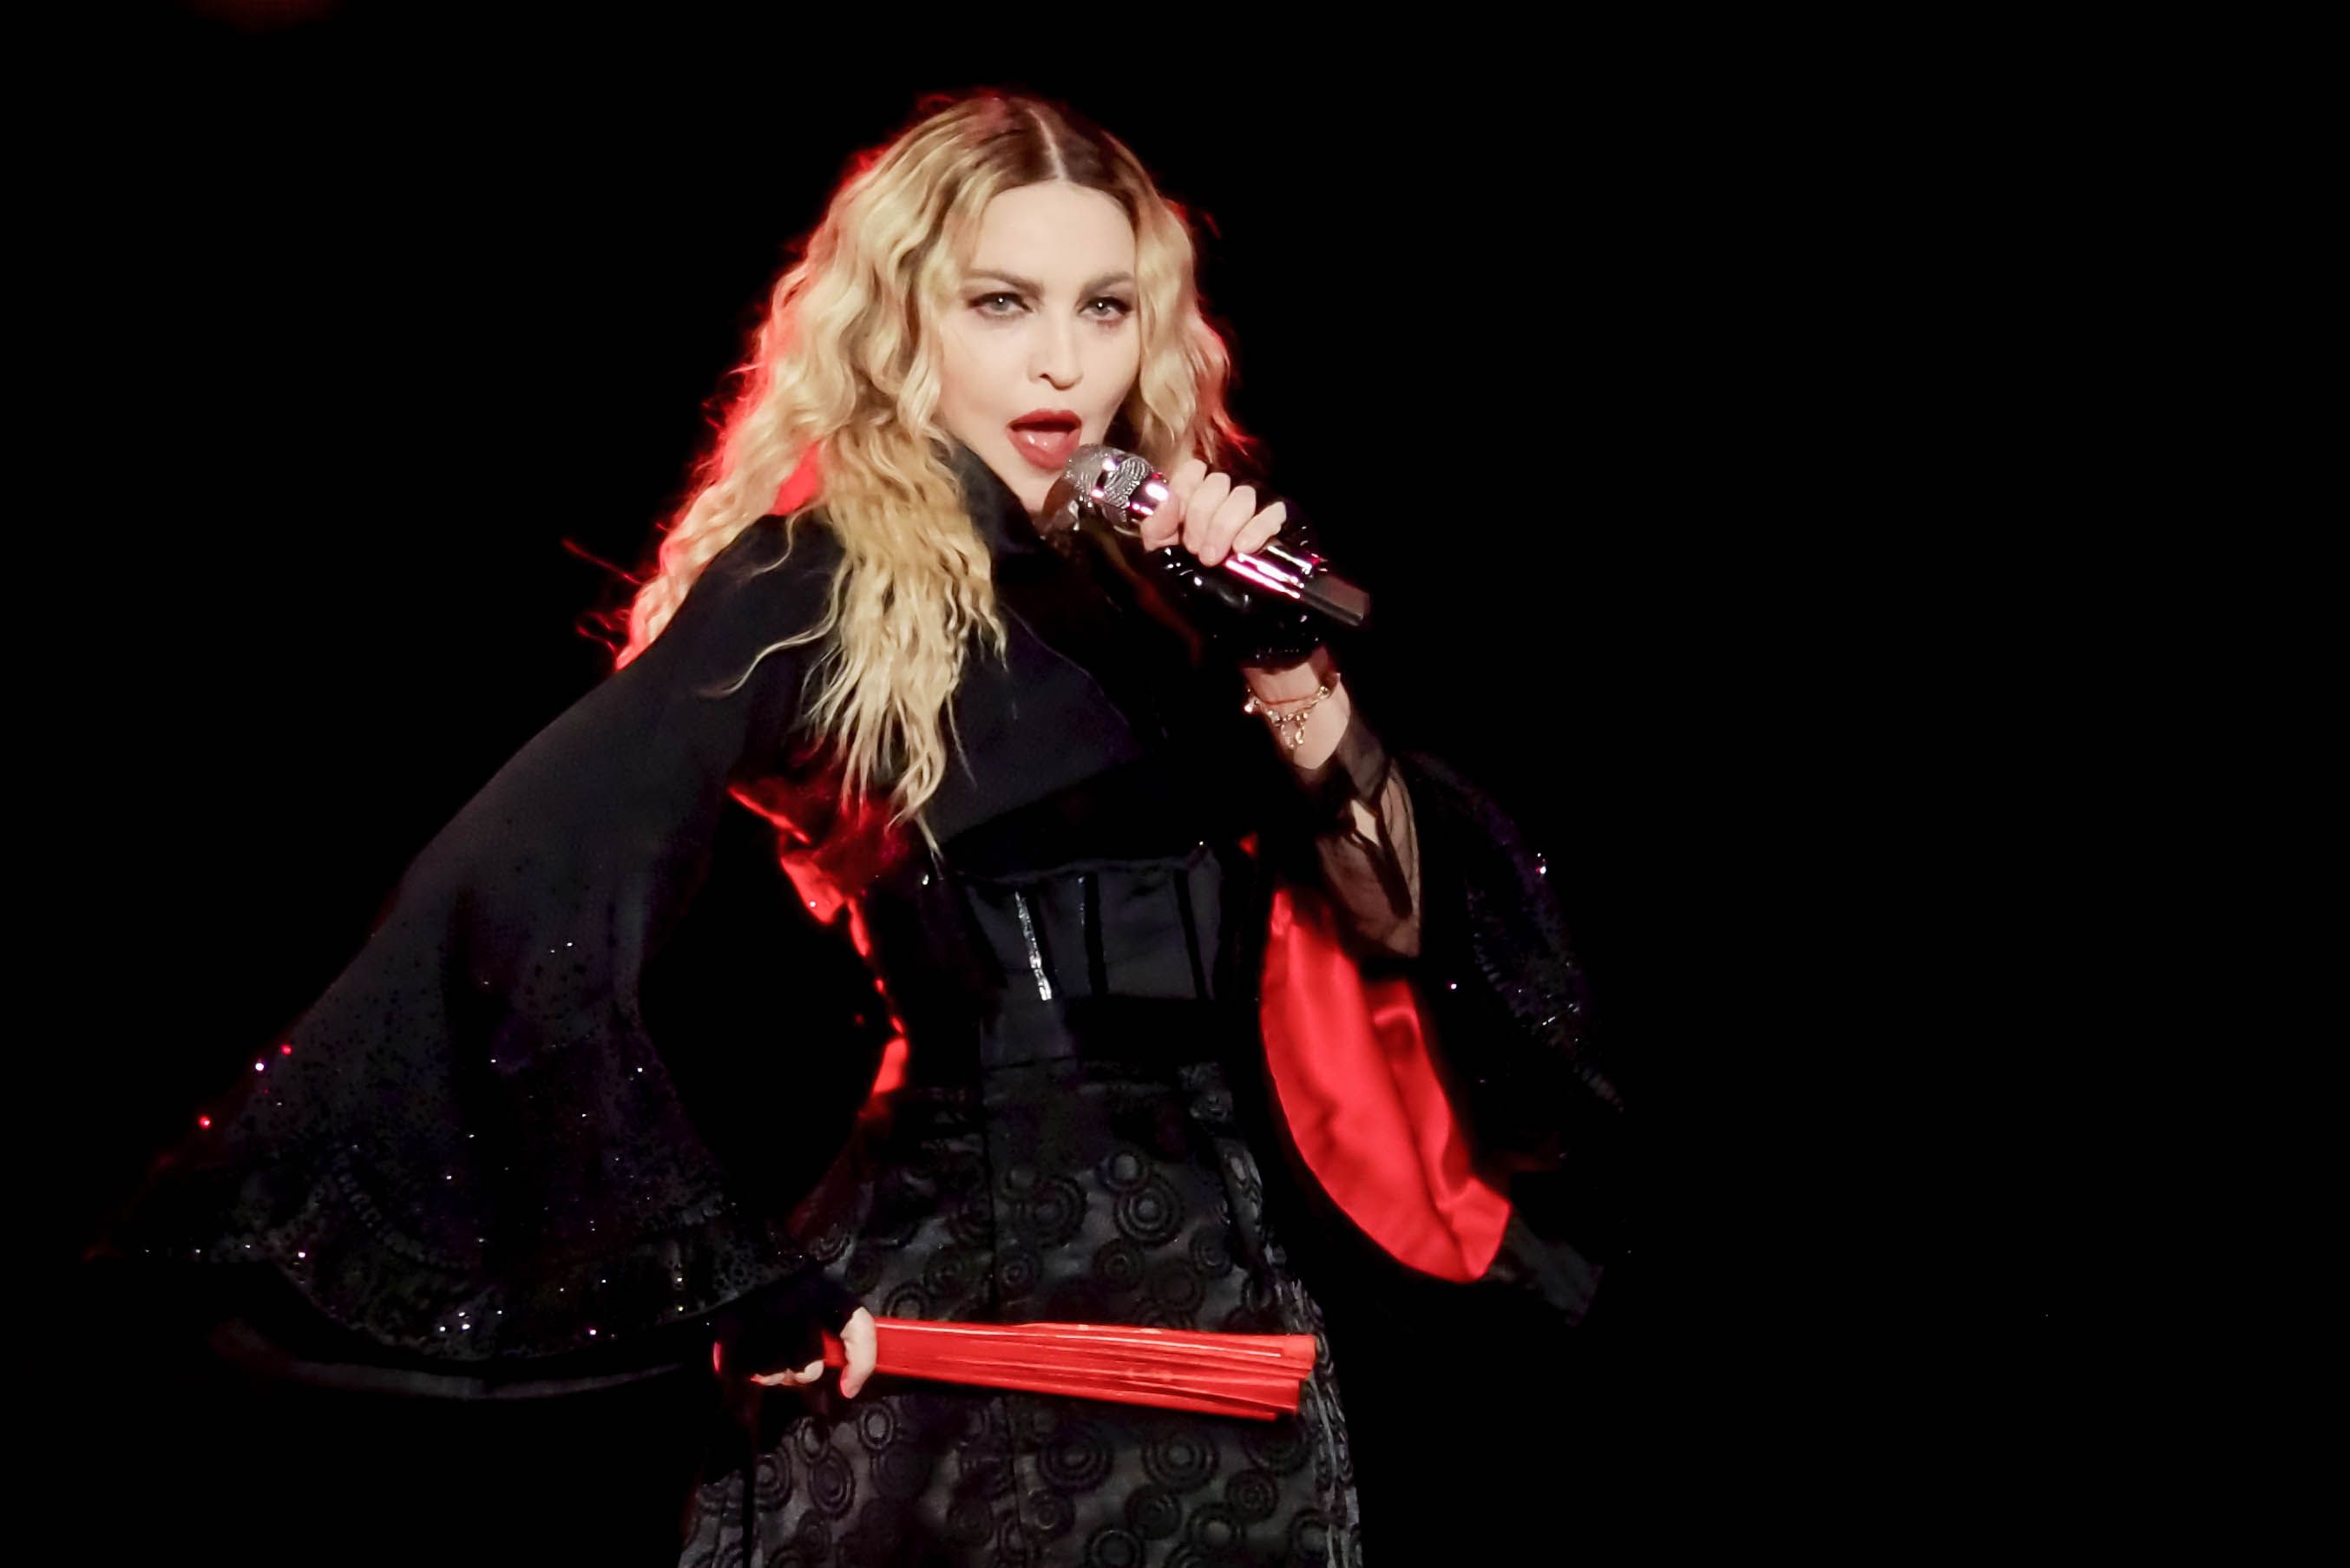 En plein show, Madonna demande à une personne en fauteuil roulant de se lever